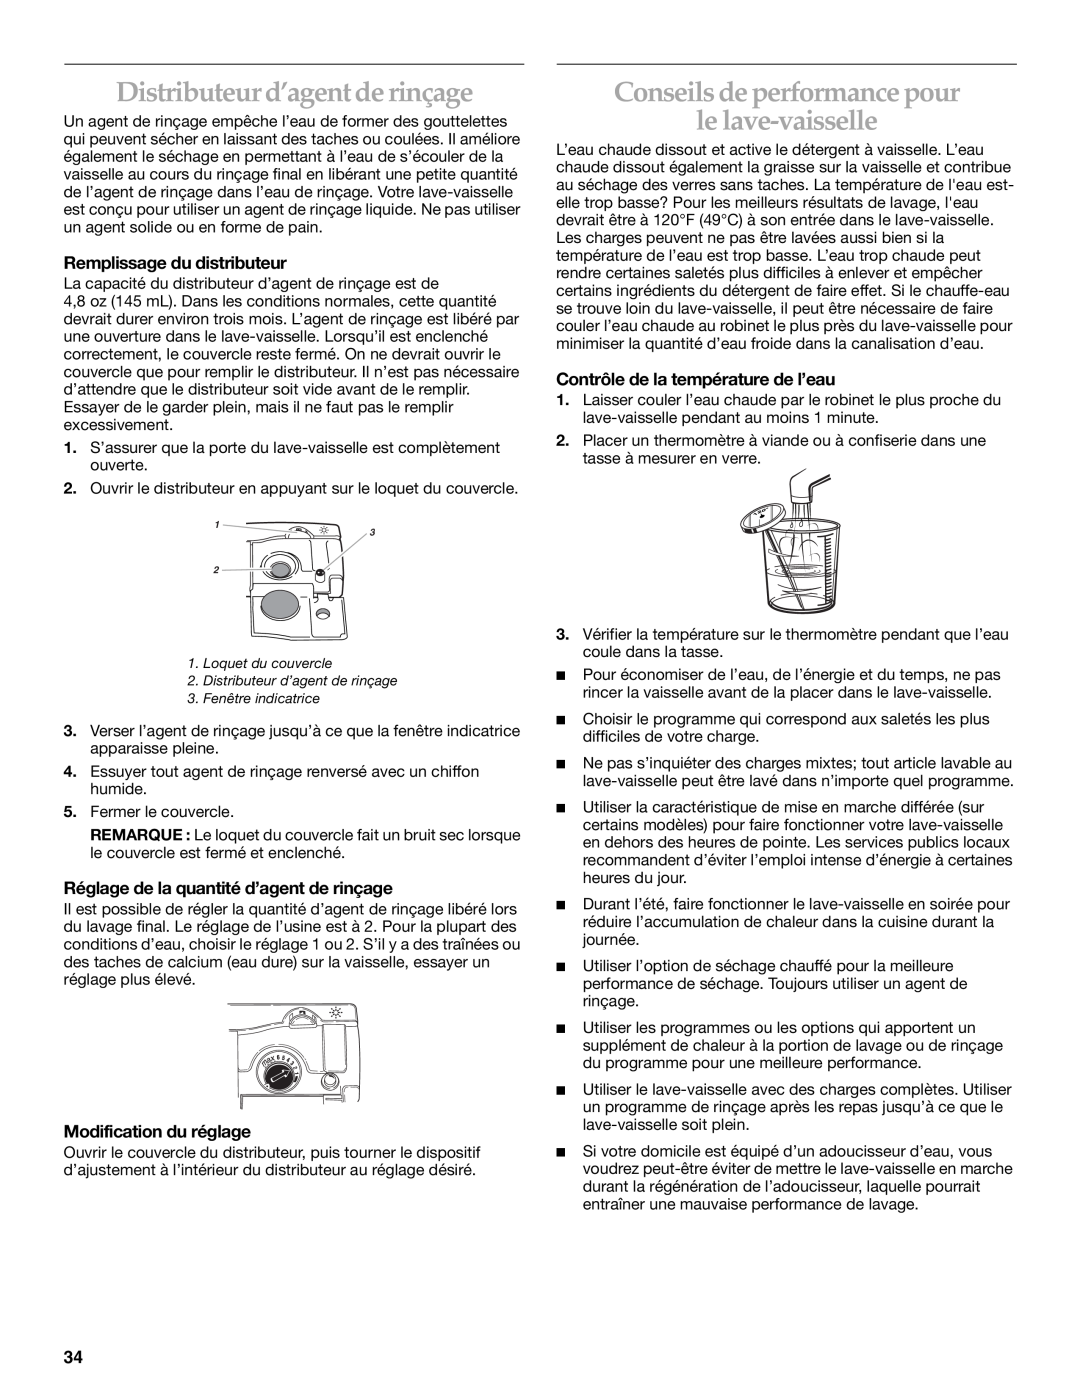 KitchenAid KUDS01VM manual Distributeur d’agent de rinçage, Conseils de performance pour le lave-vaisselle 